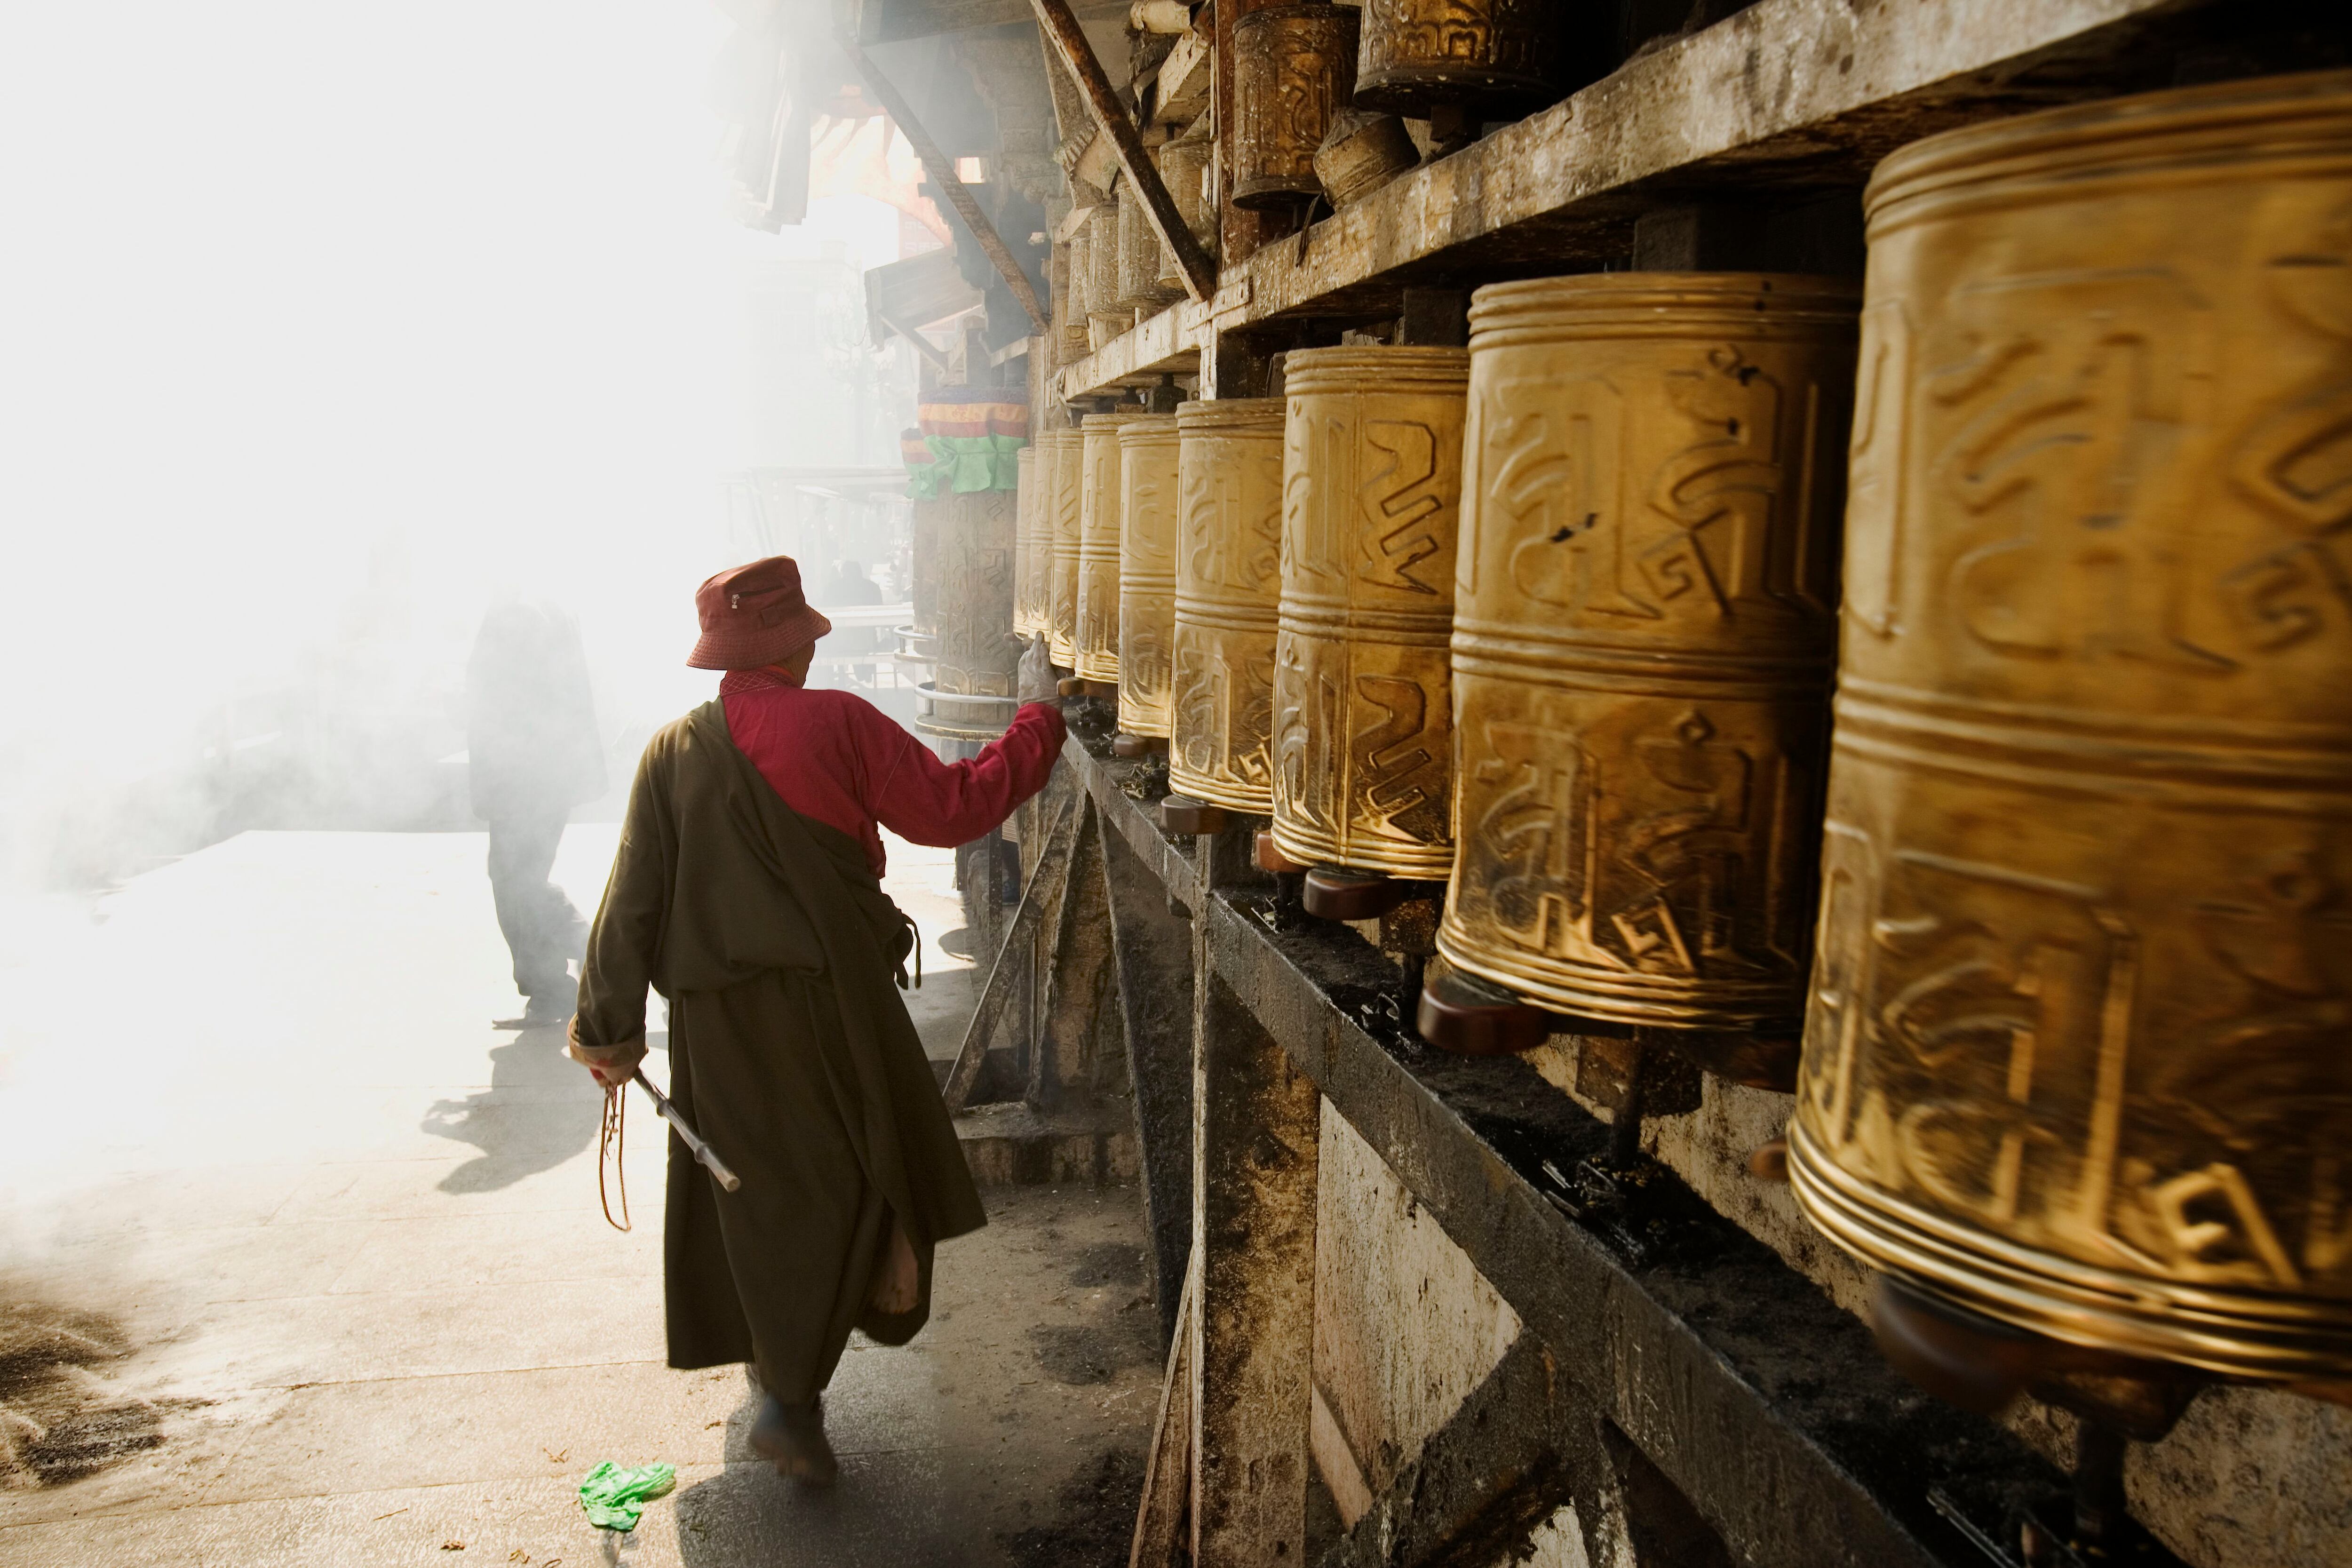 Las llamadas ruedas de plegarias (o molinillos de oración) en un templo budista en Lhasa (Tíbet).